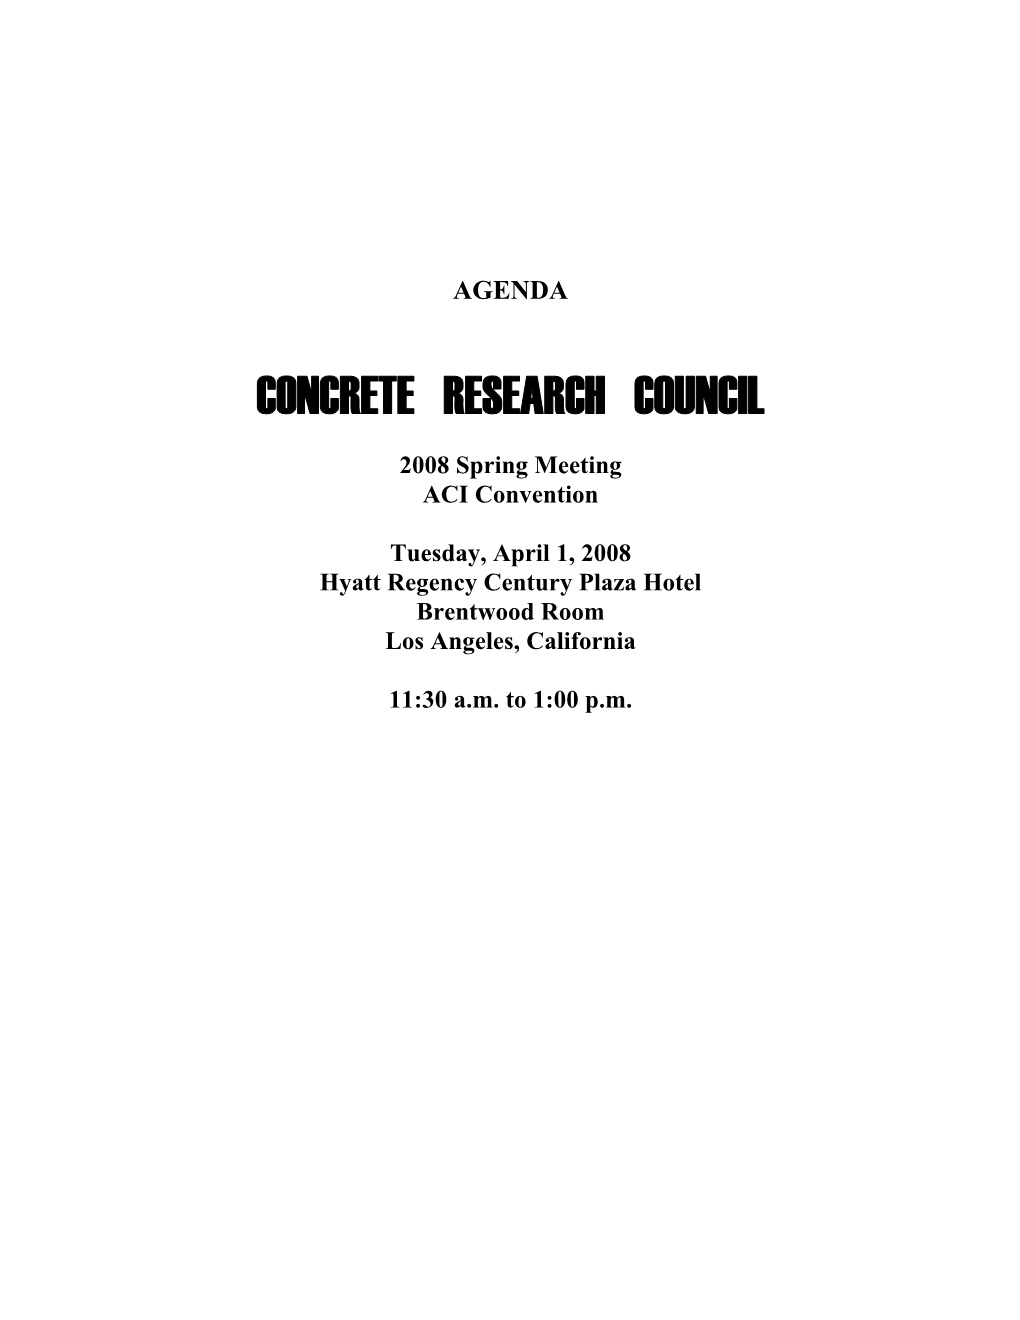 Concrete Research Council